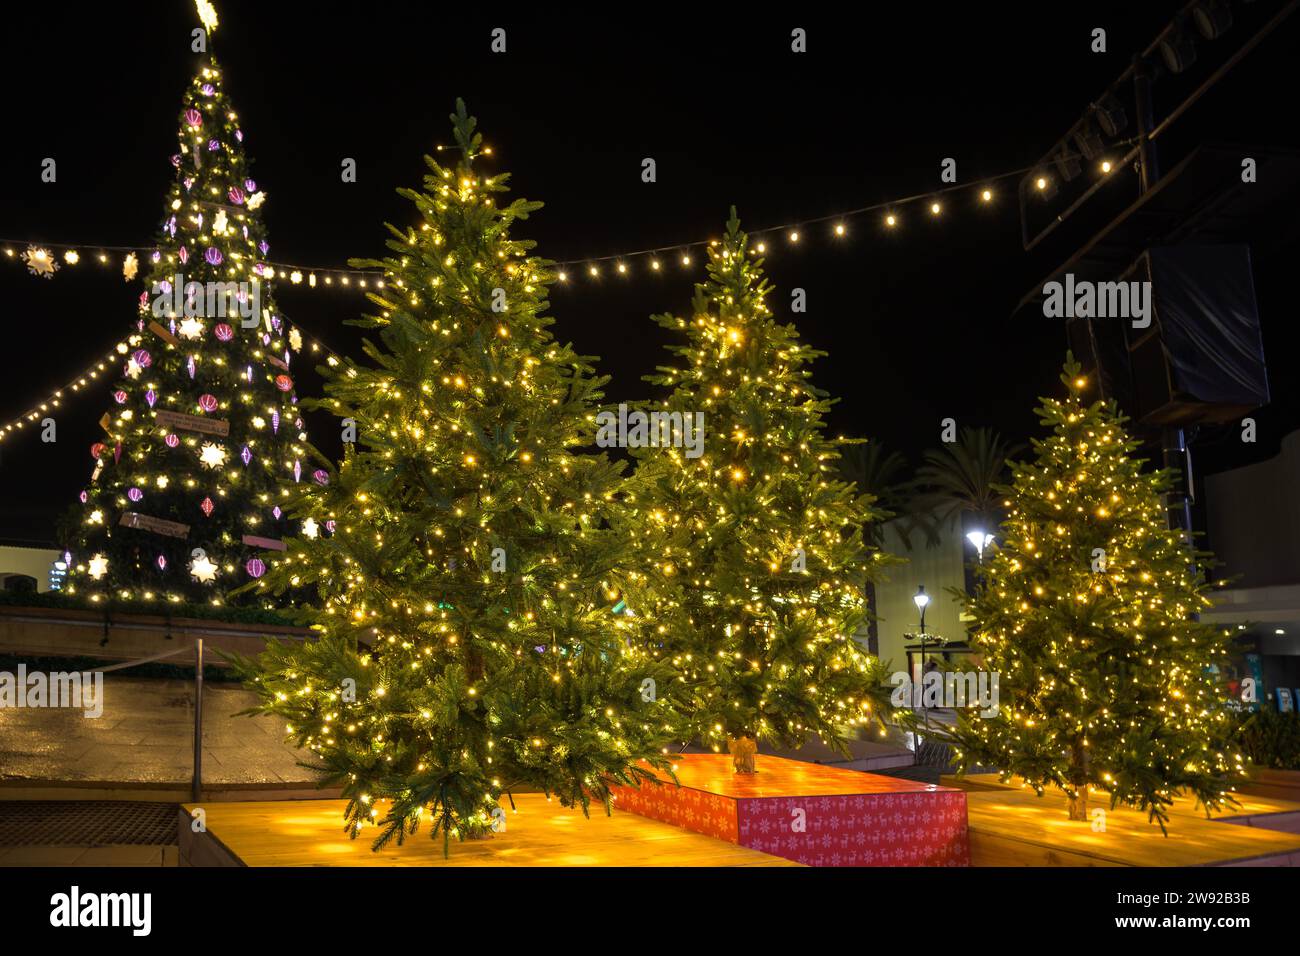 Das Gebiet in der Nähe des Hauses ist weihnachtlich dekoriert. Lebendiger Weihnachtsbaum: Fichte, Kiefer, Fichte in Töpfen Stockfoto